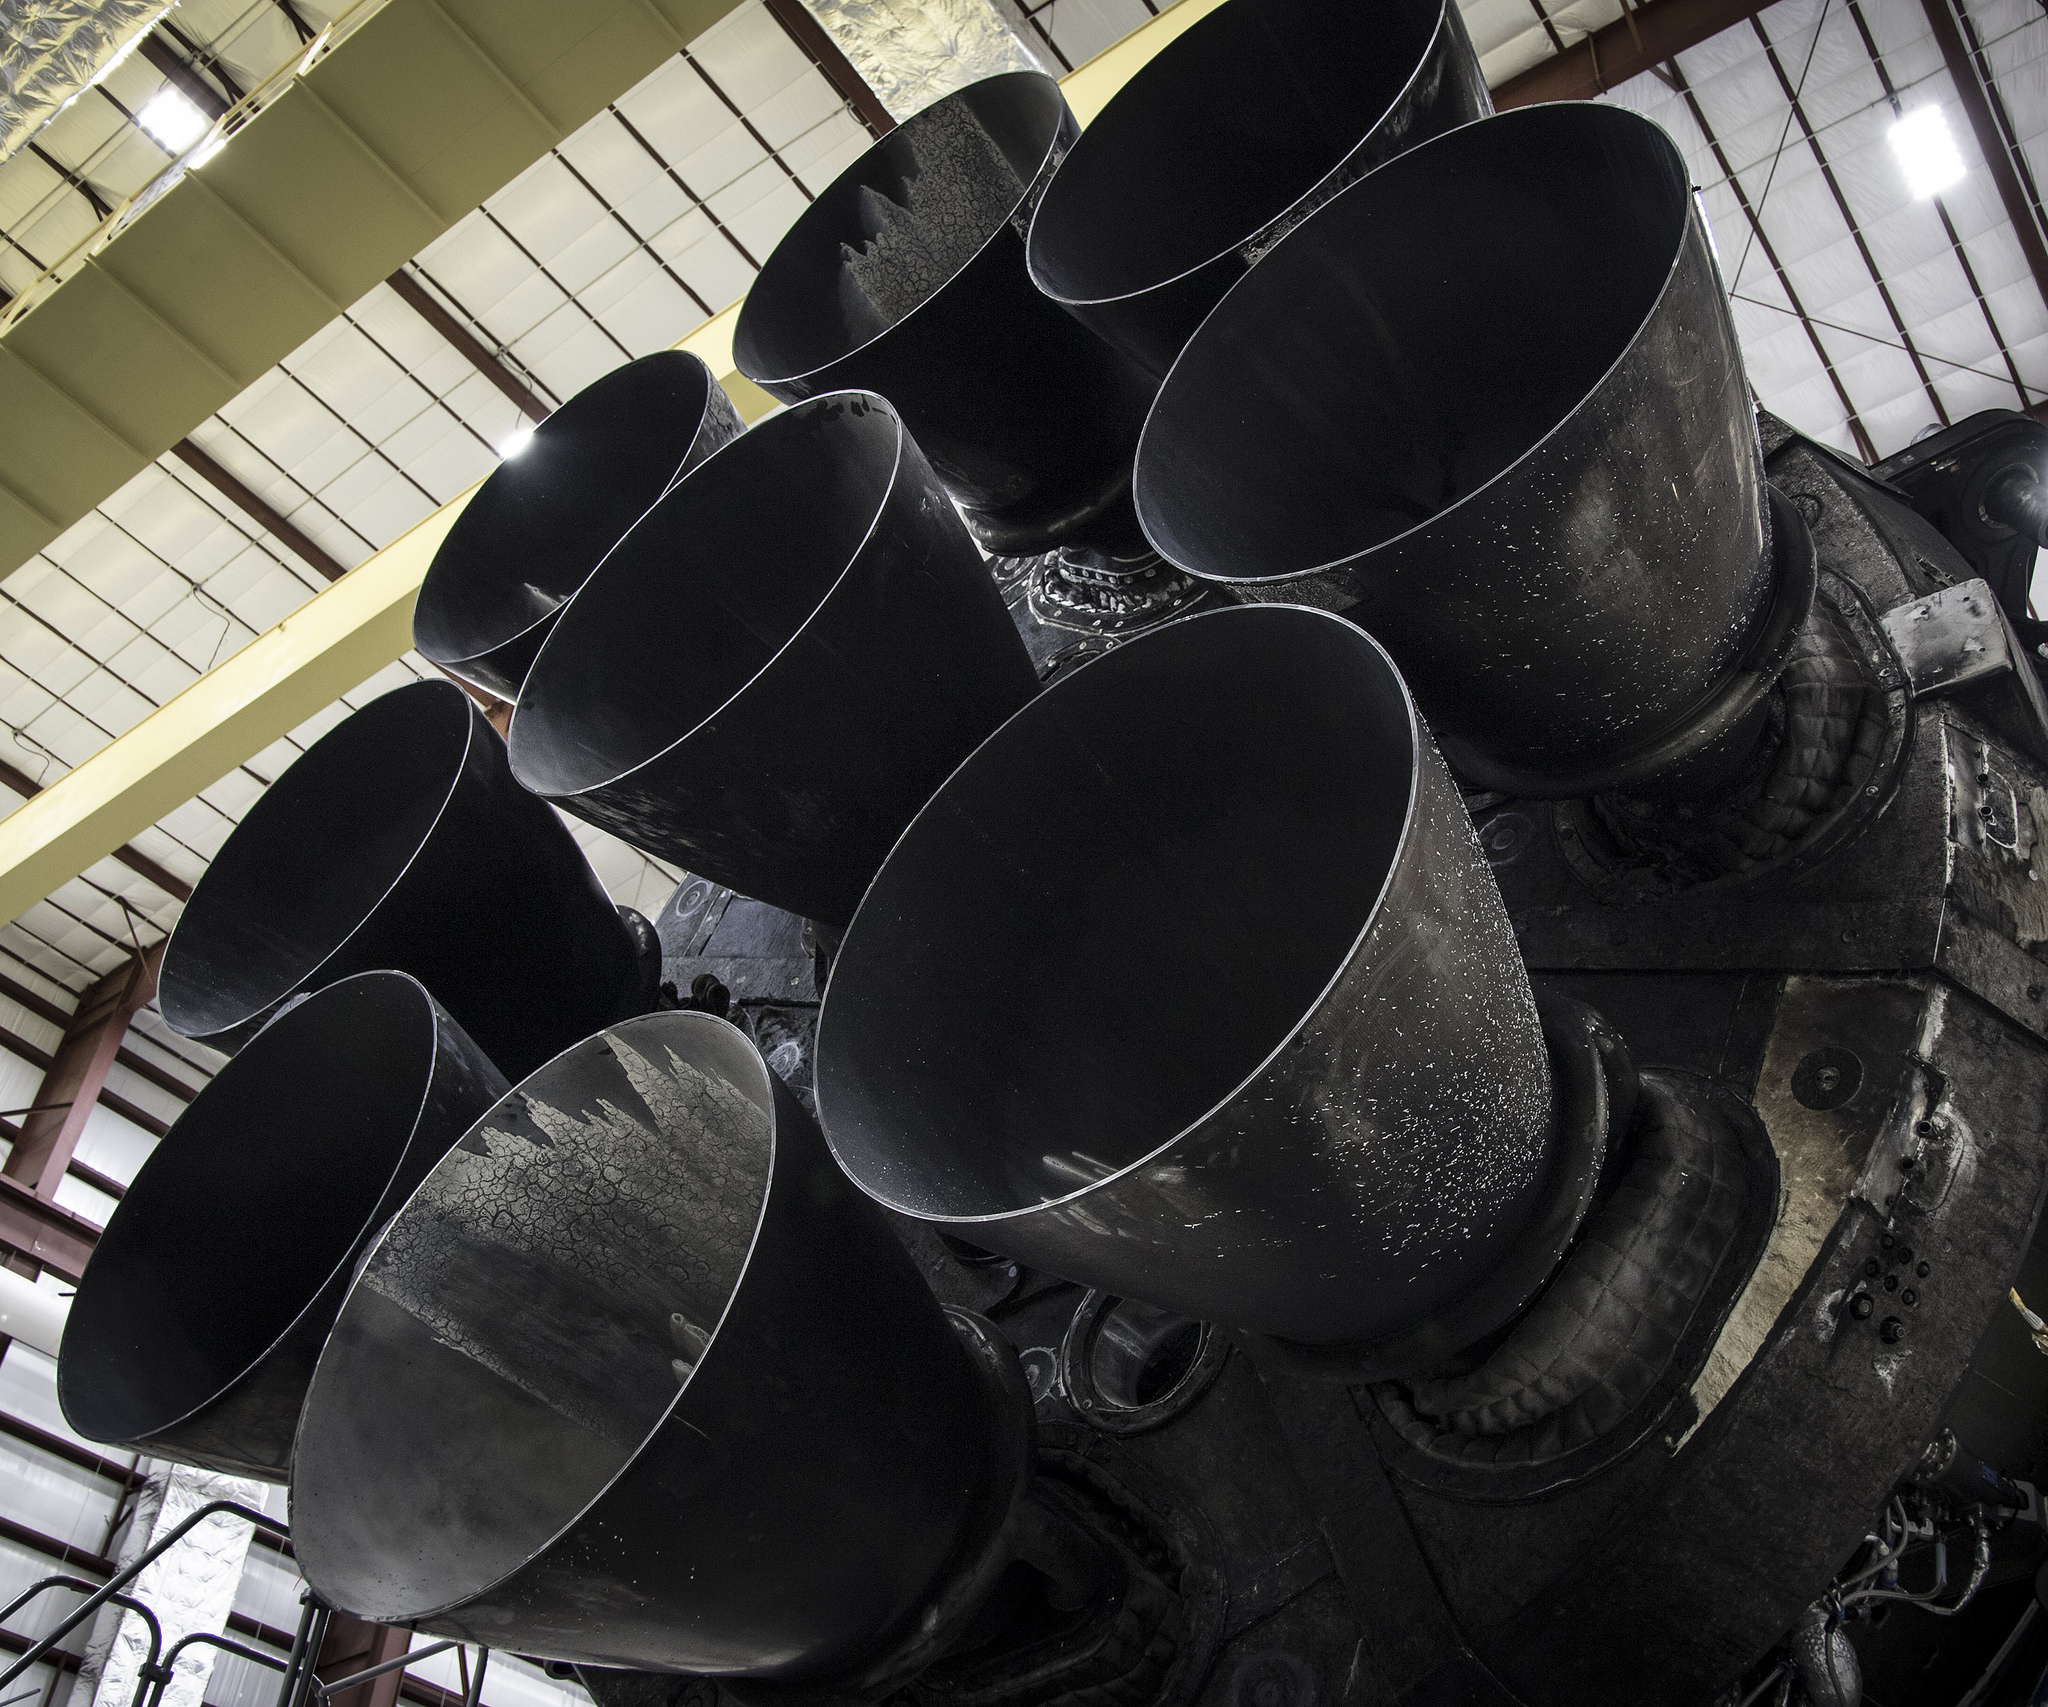 SpaceX roketlerinde kronik bozukluk mu var? Federal müfettişlerden şok iddia